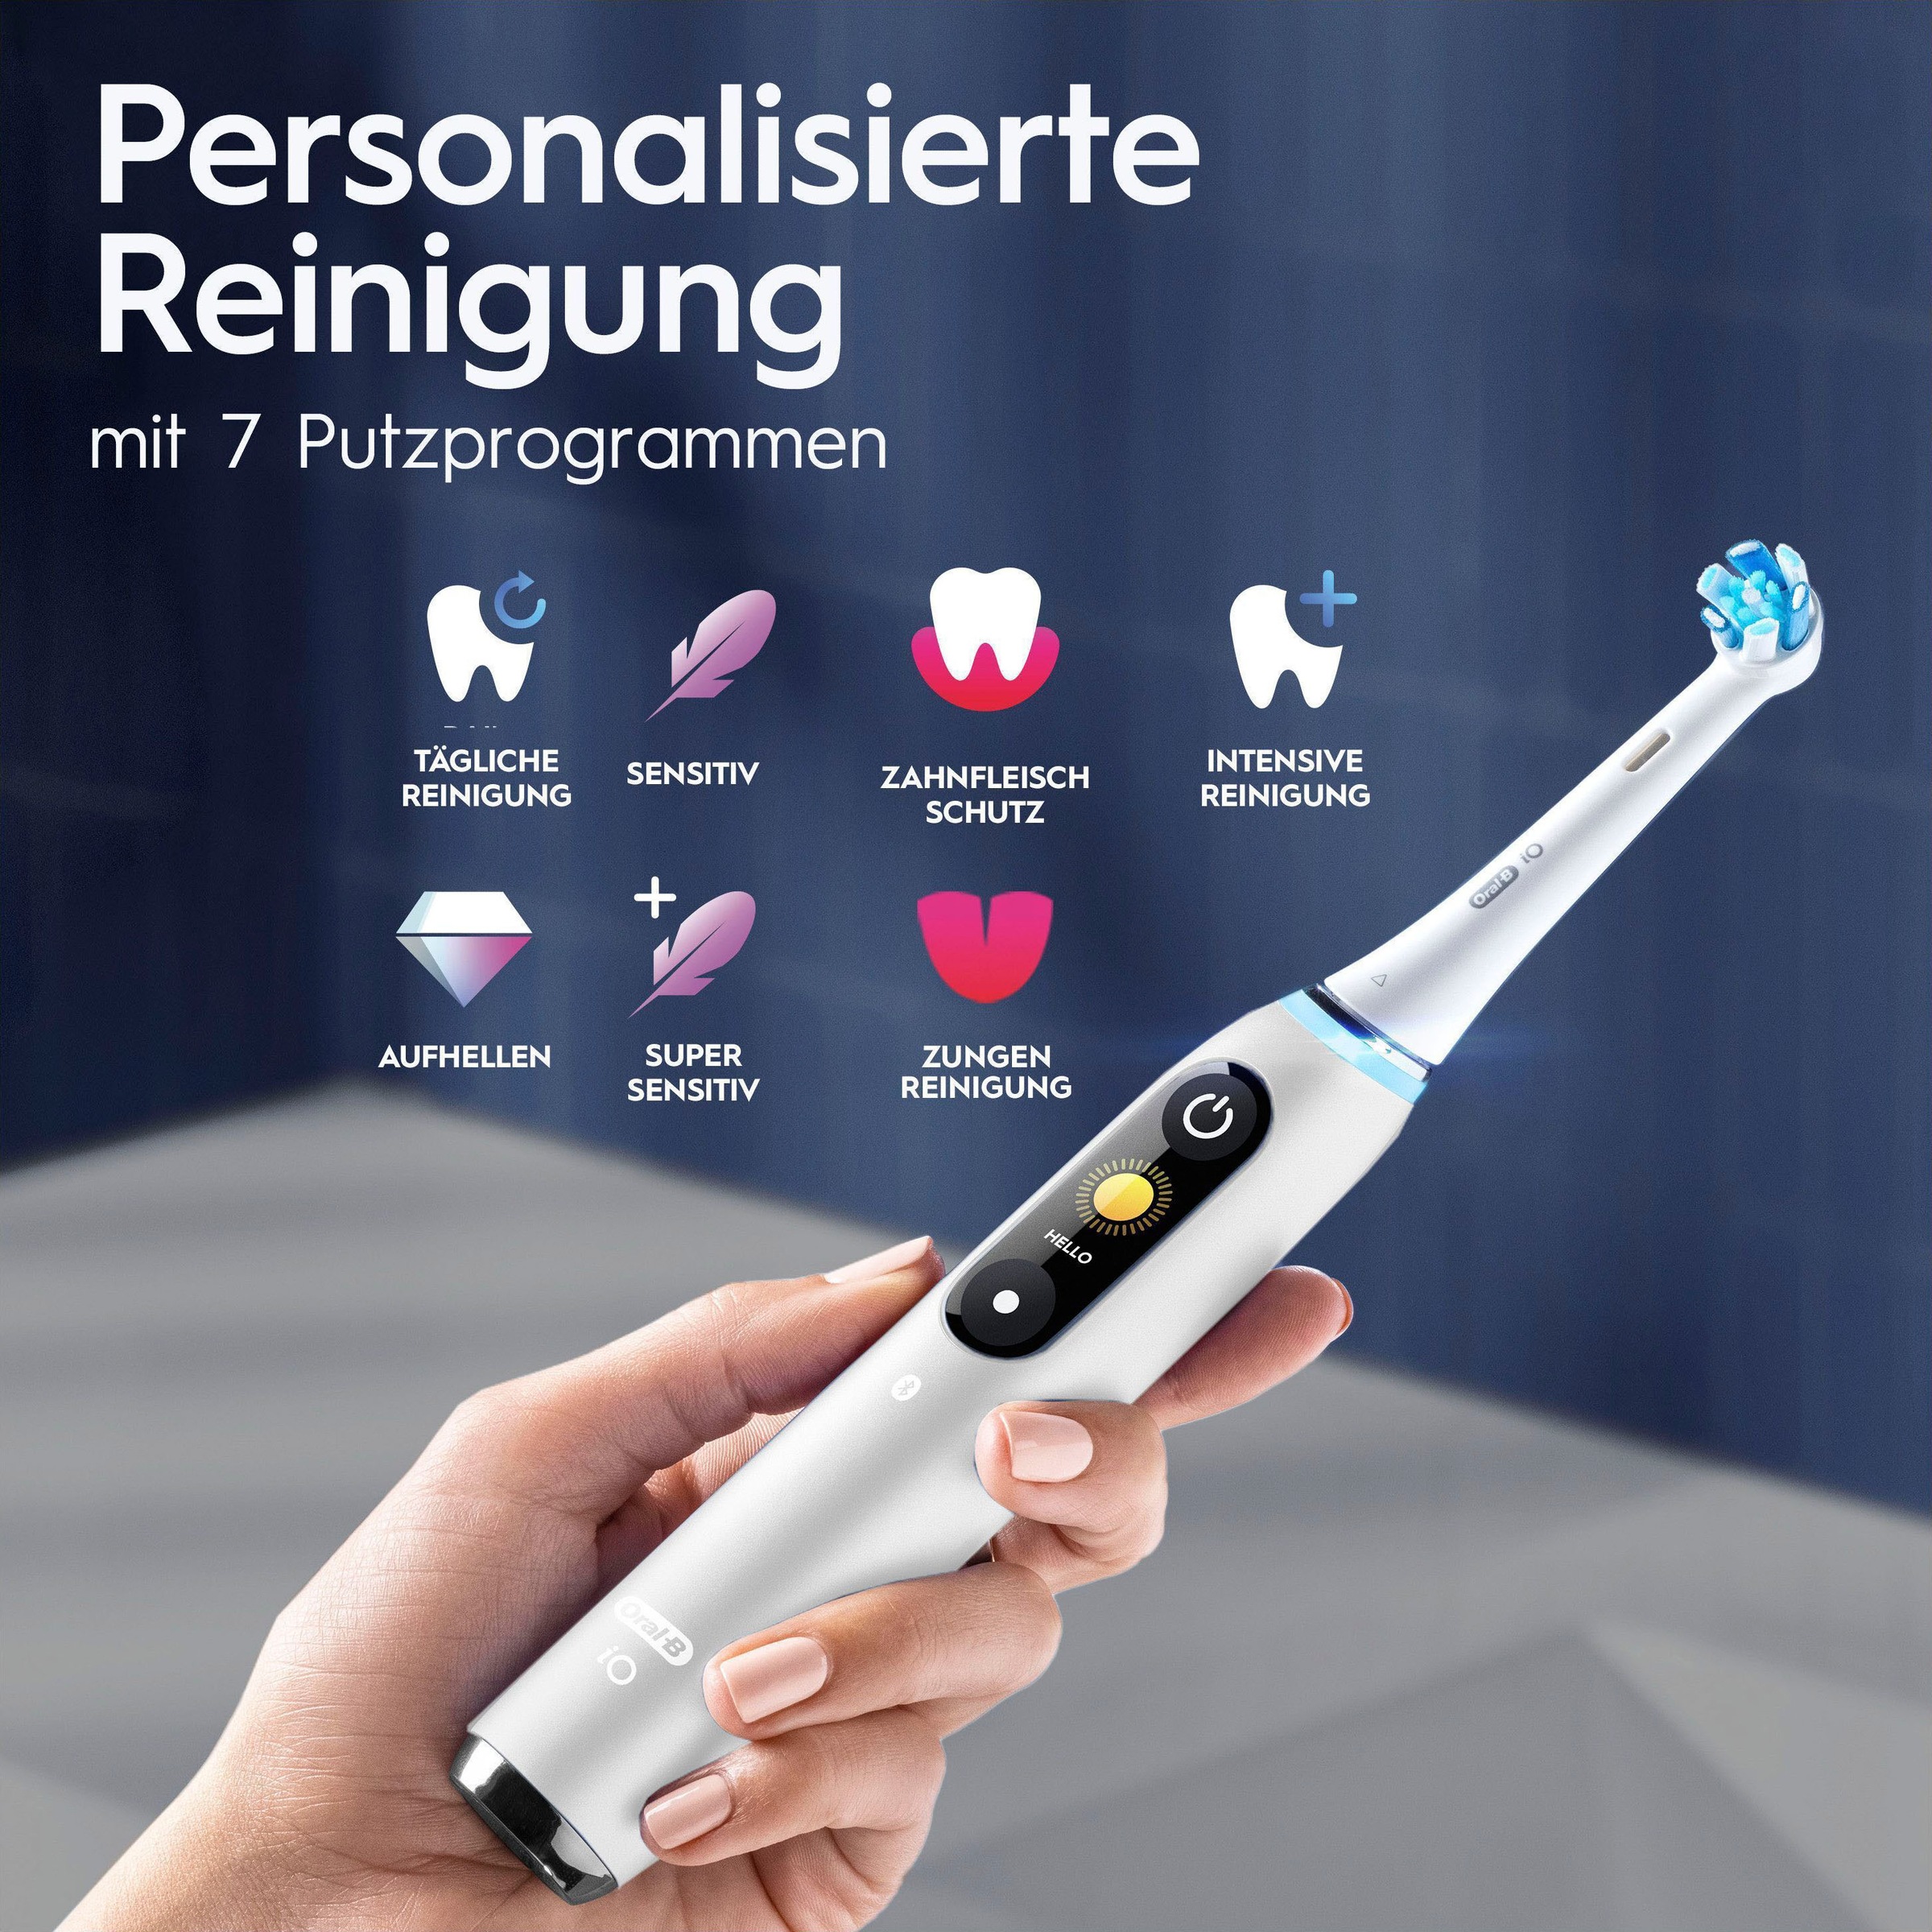 Oral-B Elektrische Zahnbürste »iO Series 9«, 1 St. Aufsteckbürsten, mit Reiseetui